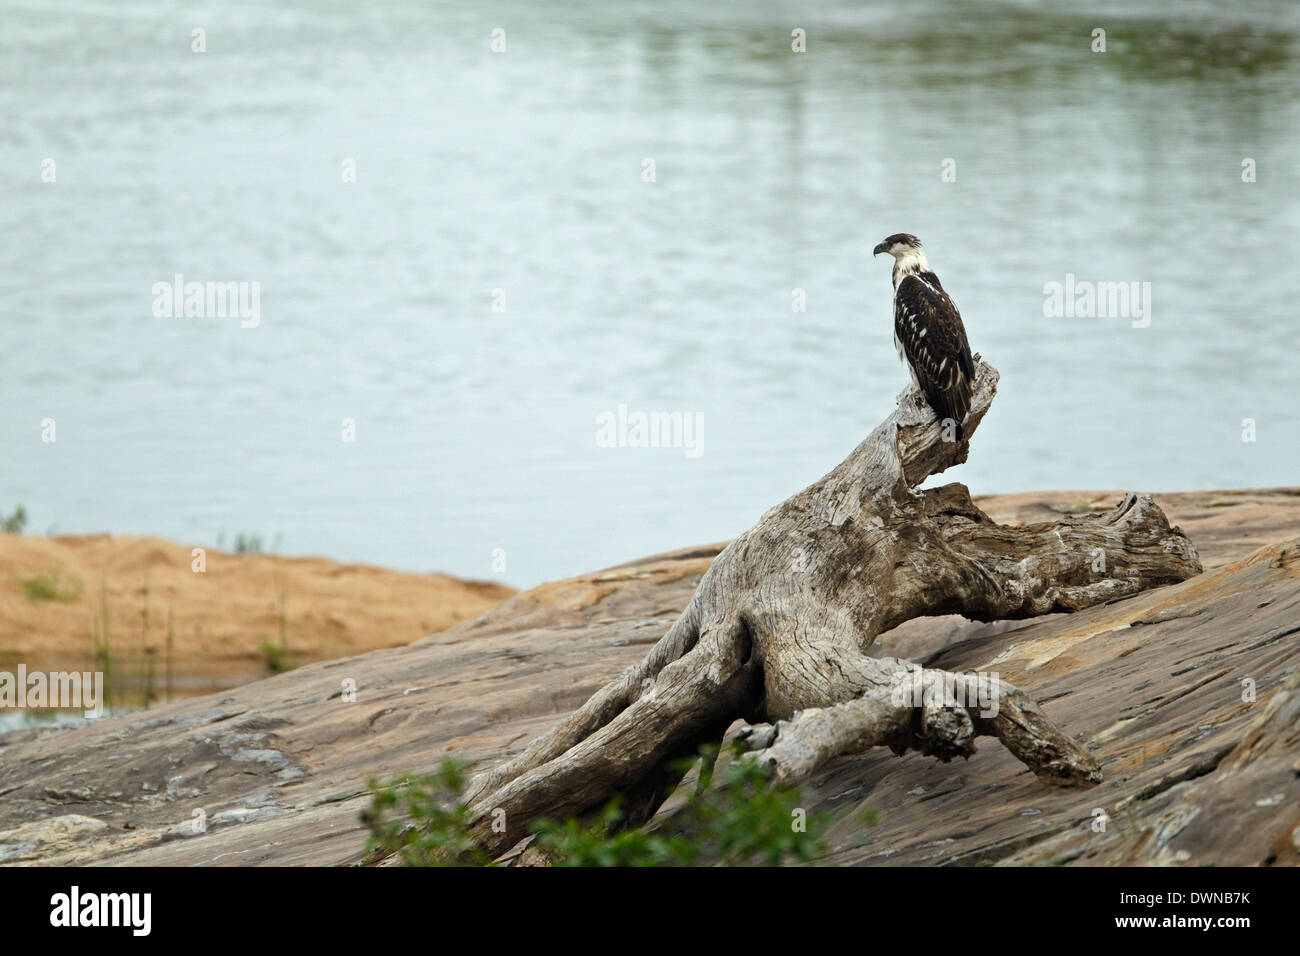 Juvenile African Fish Eagle (Haliaeetus vocifer), Kruger National Park South Africa Stock Photo